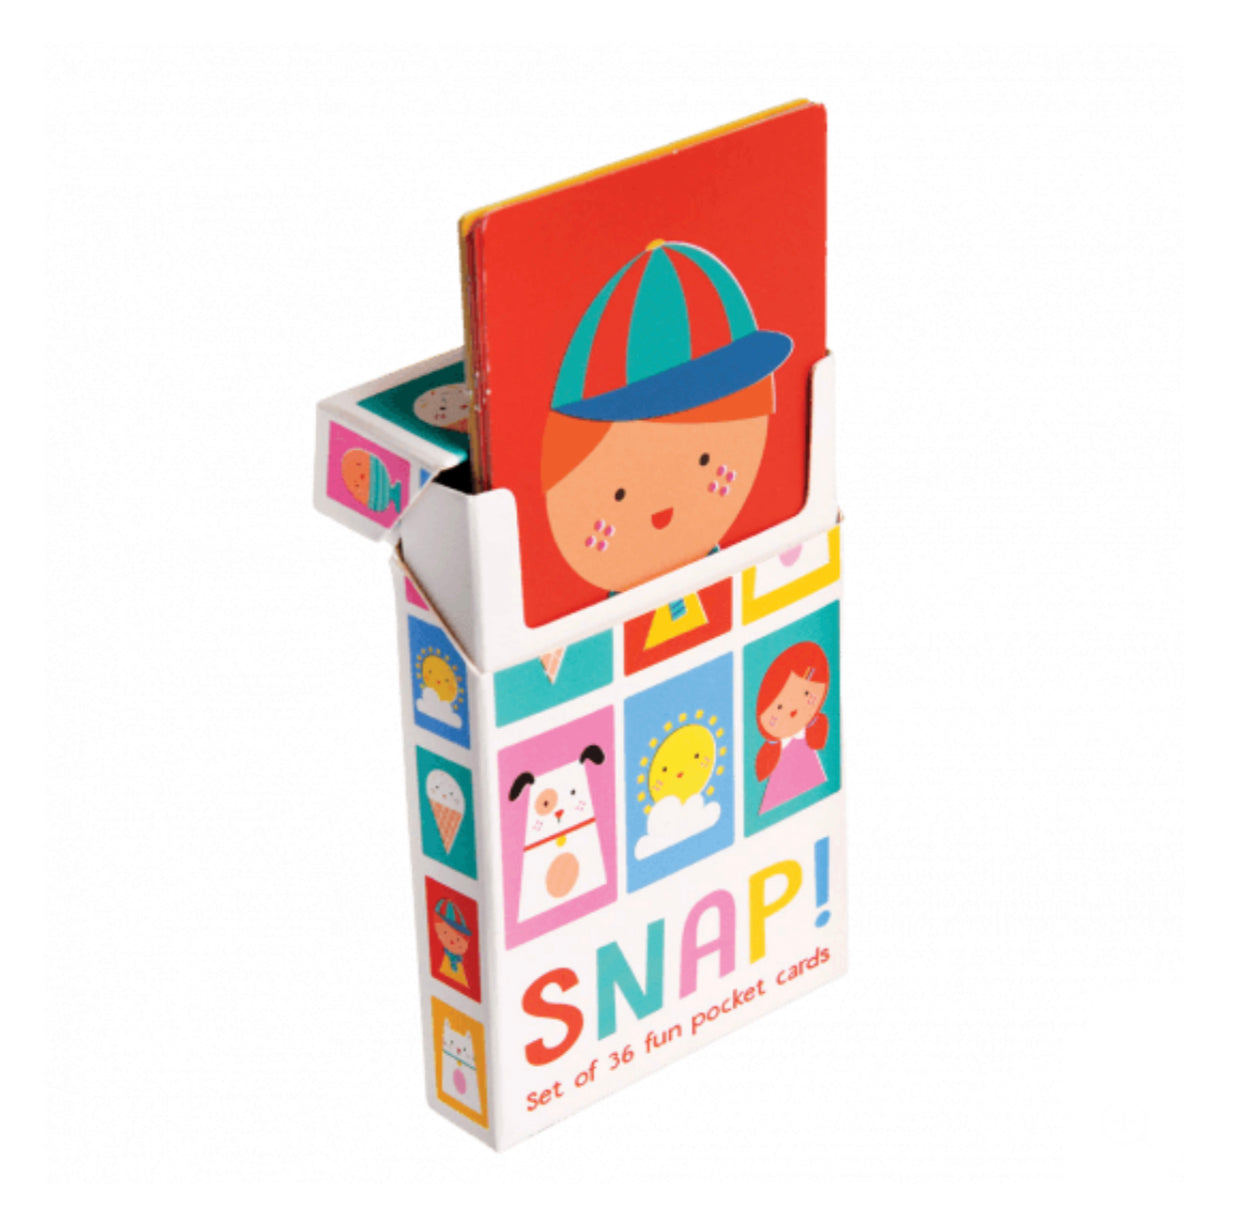 Rex London | SNAP Set of 36 Card Game